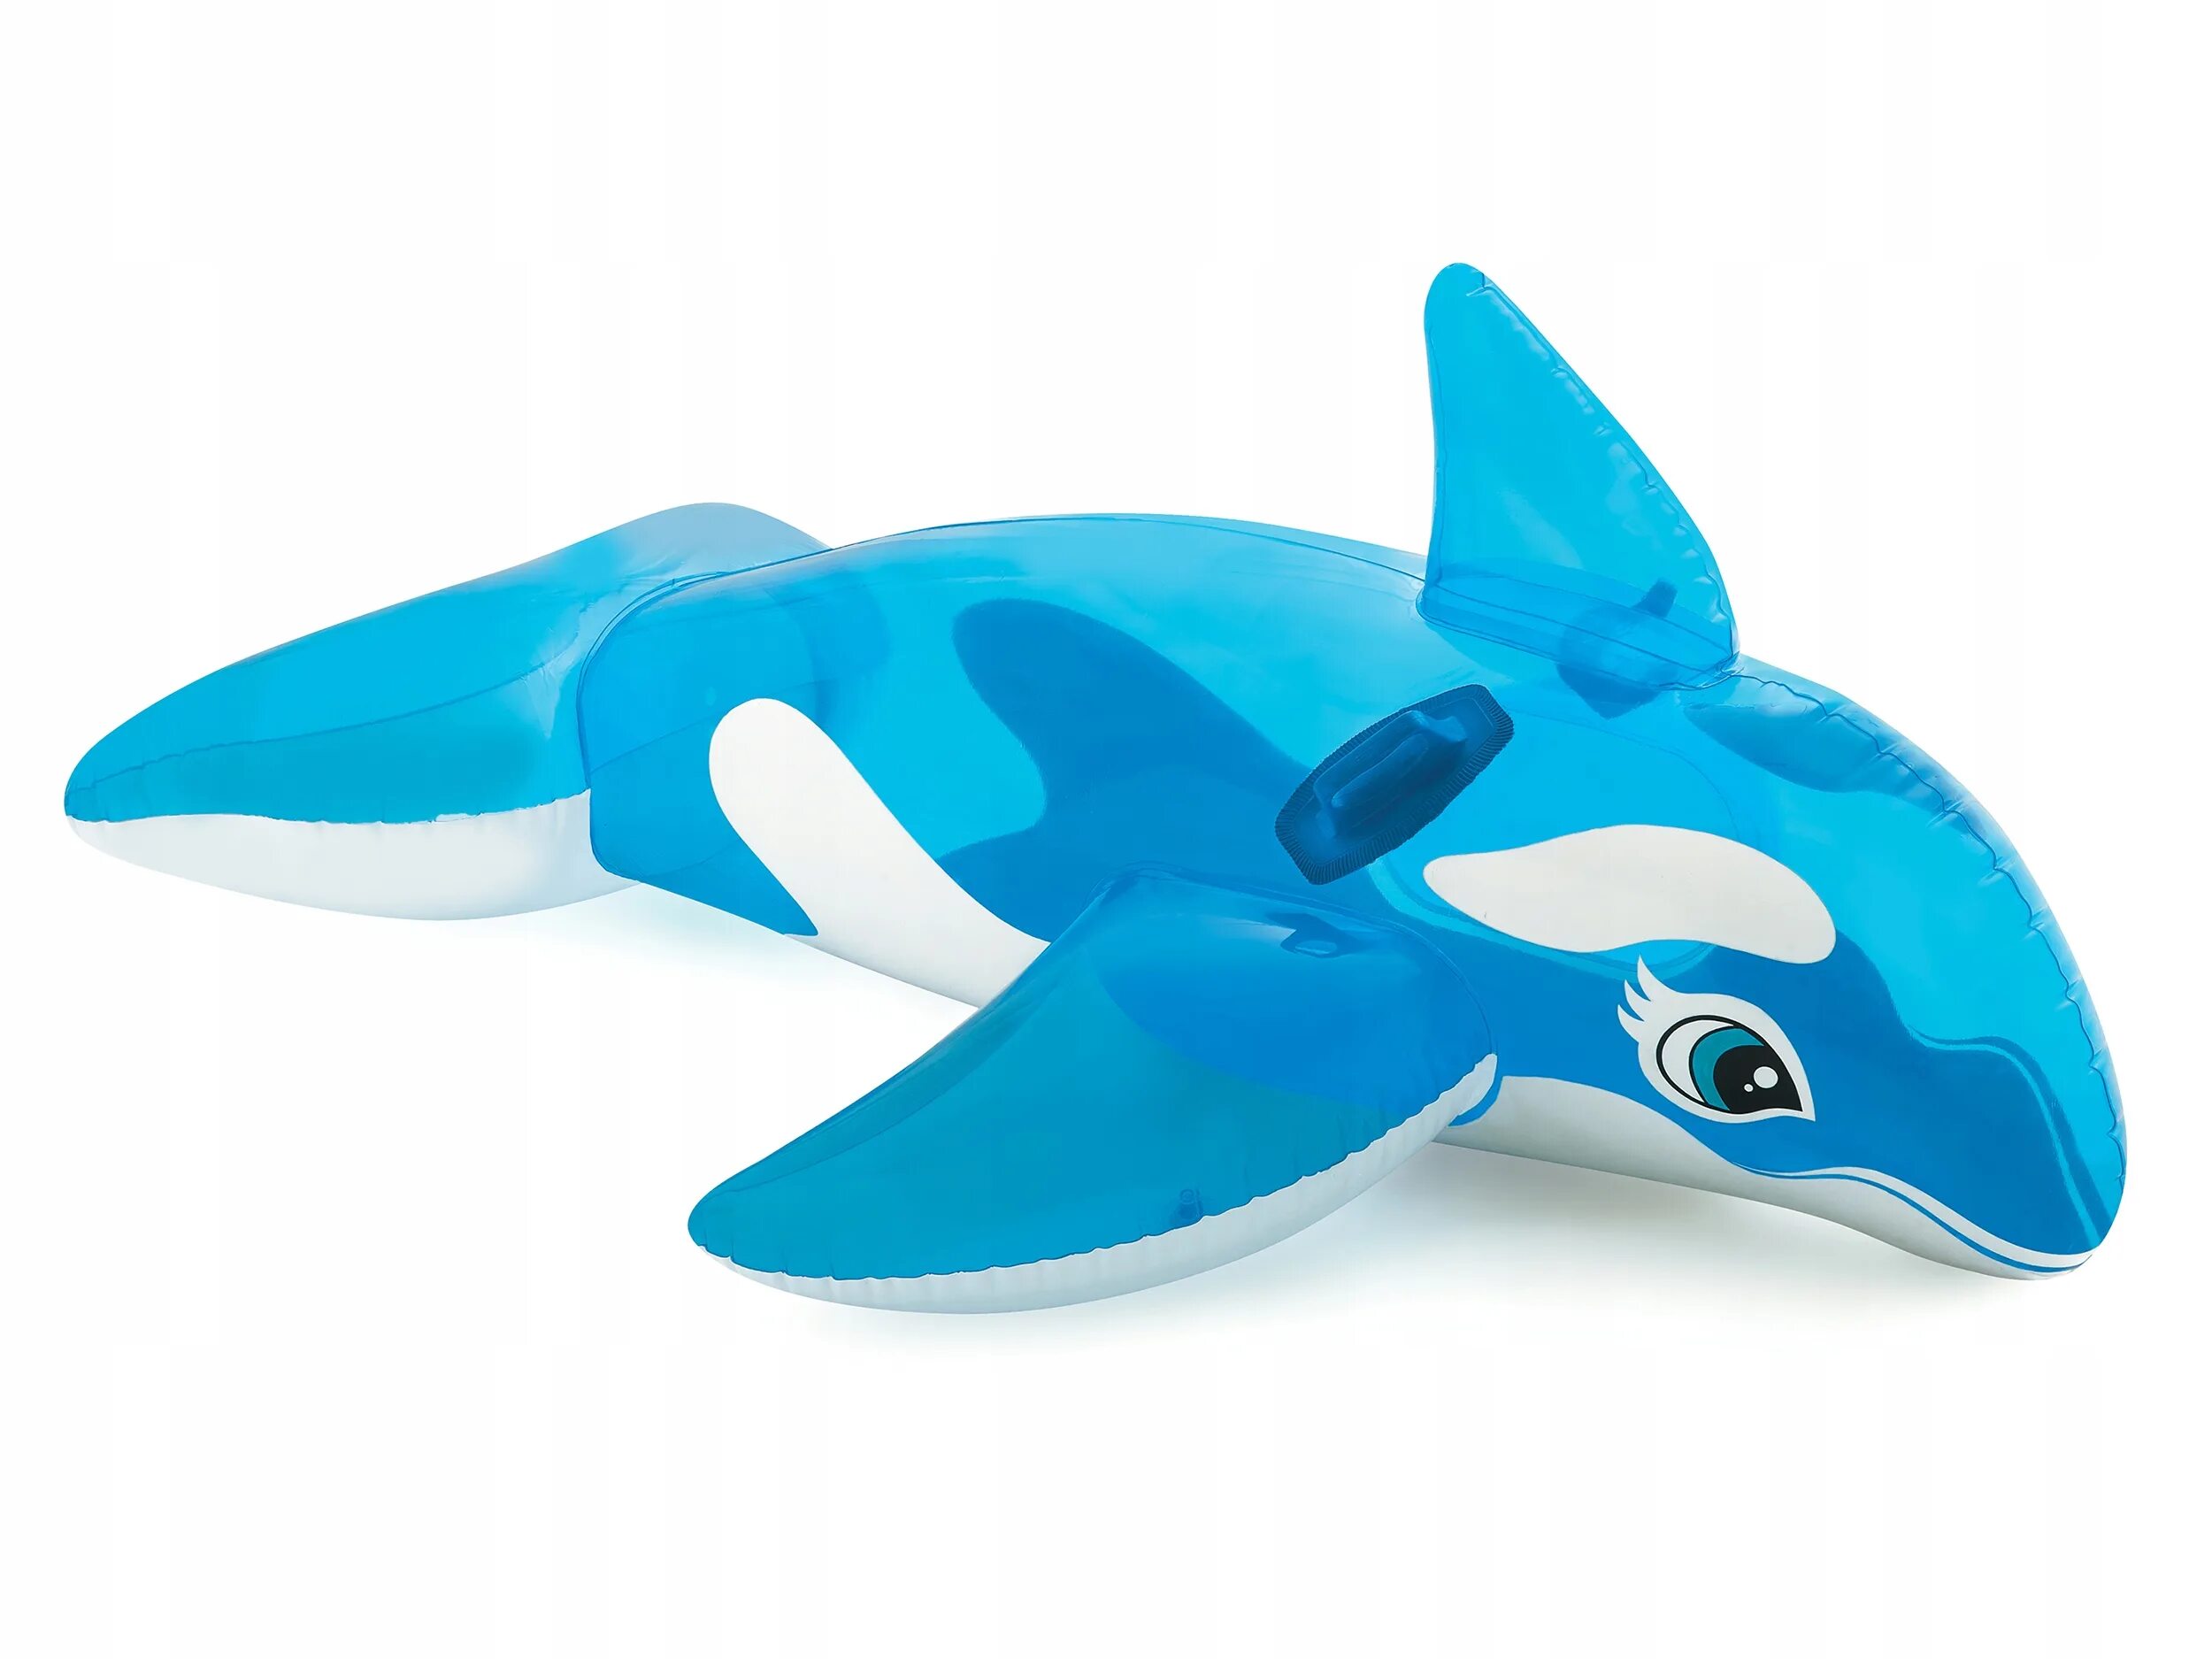 Надувная касатка. Надувная Касатка Intex. Надувная игрушка Intex Касатка. Игрушка для плавания кит , 152 х 114 см, от 3 лет, (58523np) Intex. Надувная игрушка-наездник Intex акула 57525.